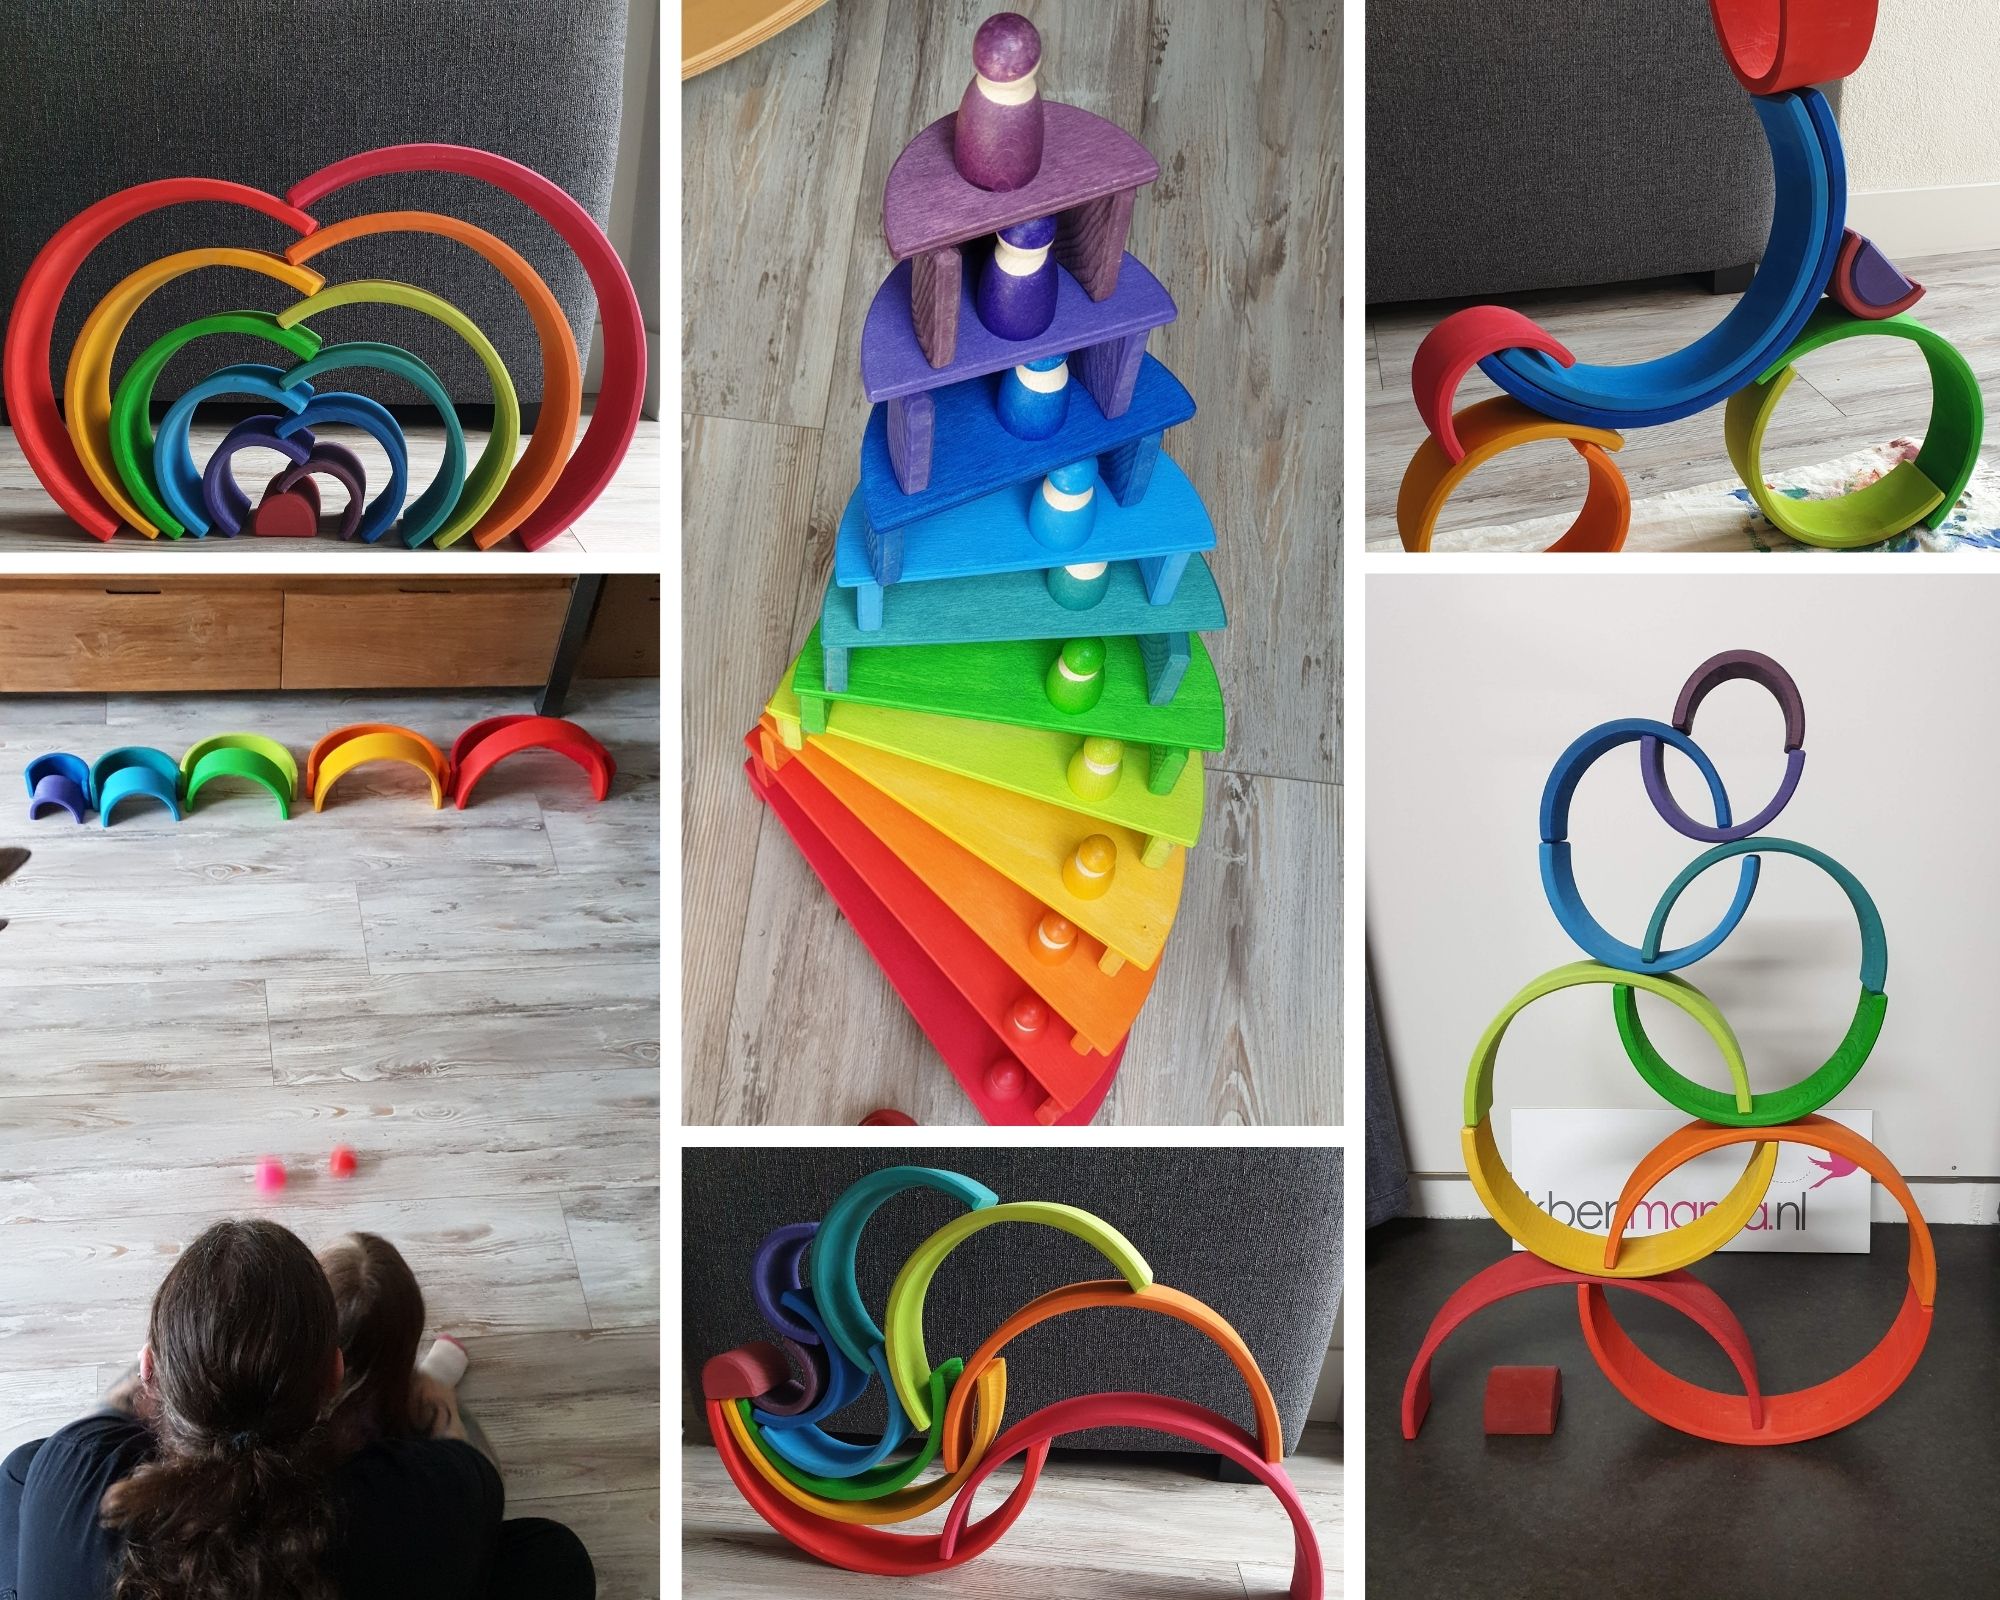 Wat kun je doen de houten Grimm's regenboog? | Ikbenmama.nl